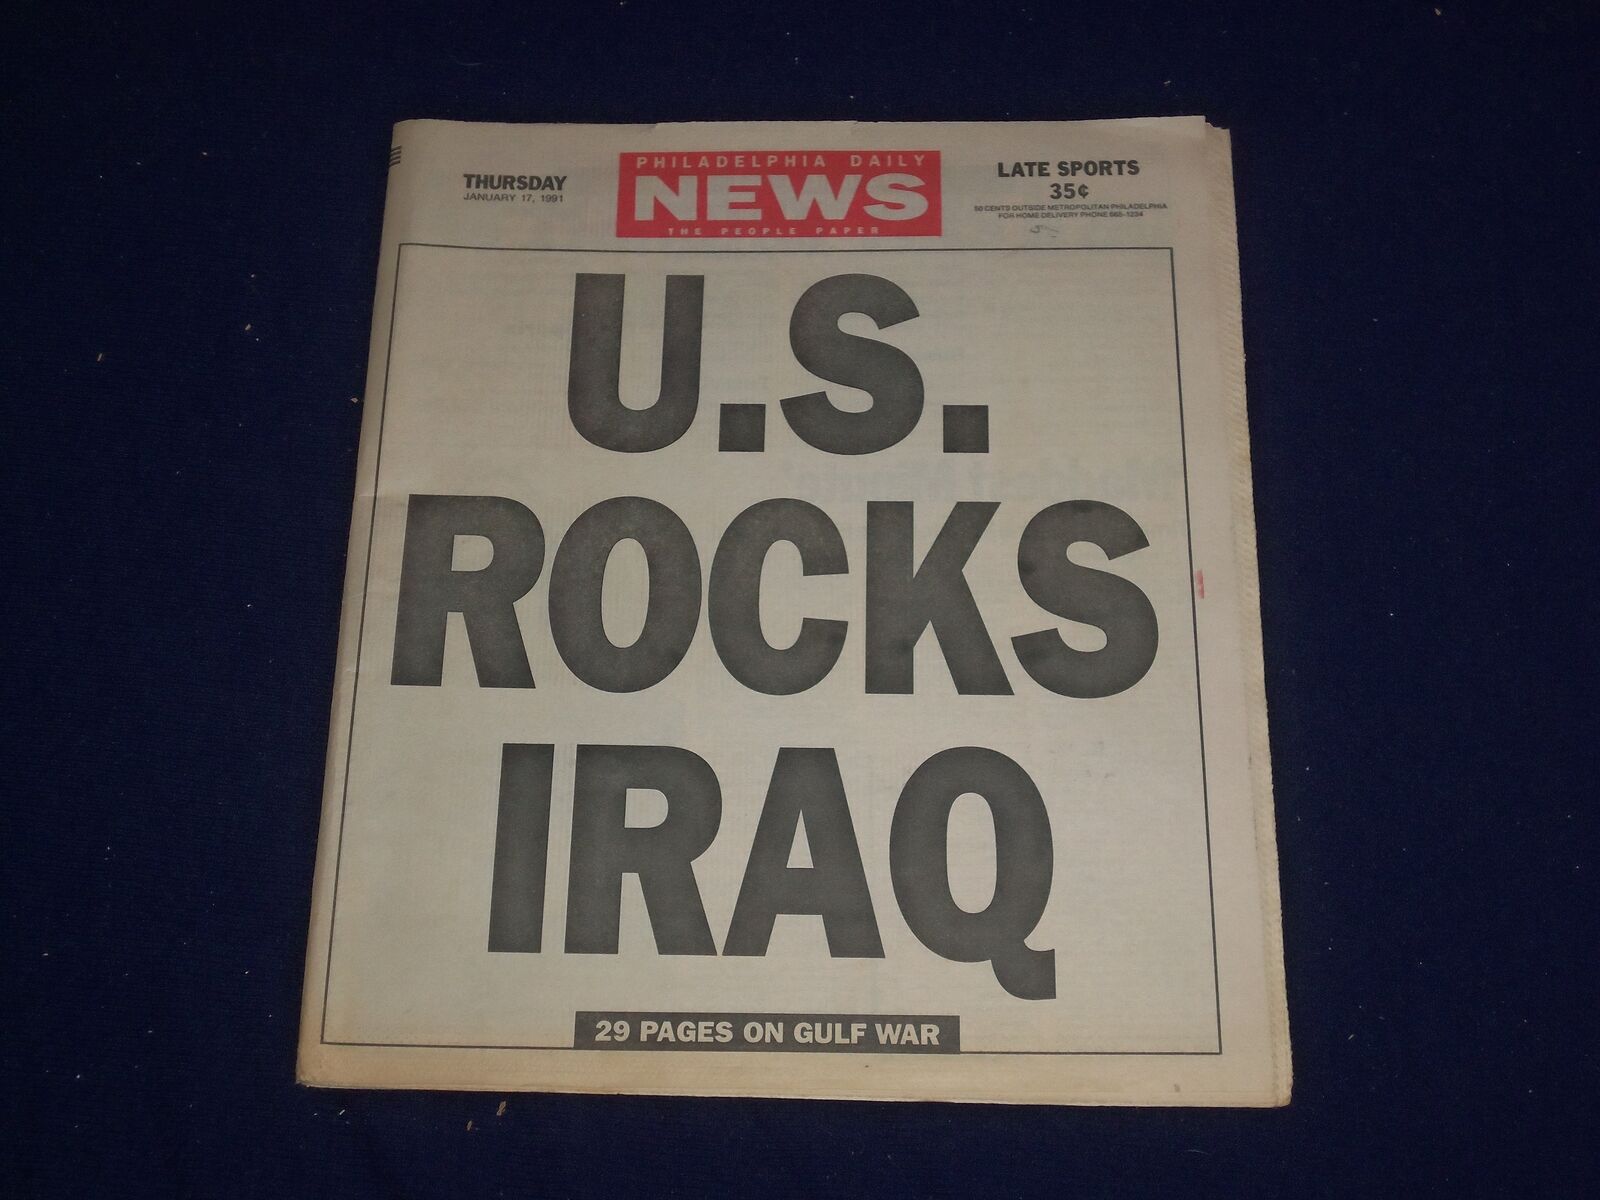 1991 JAN 17 PHILADELPHIA DAILY NEWS - U.S. ROCKS IRAQ - NP 2982